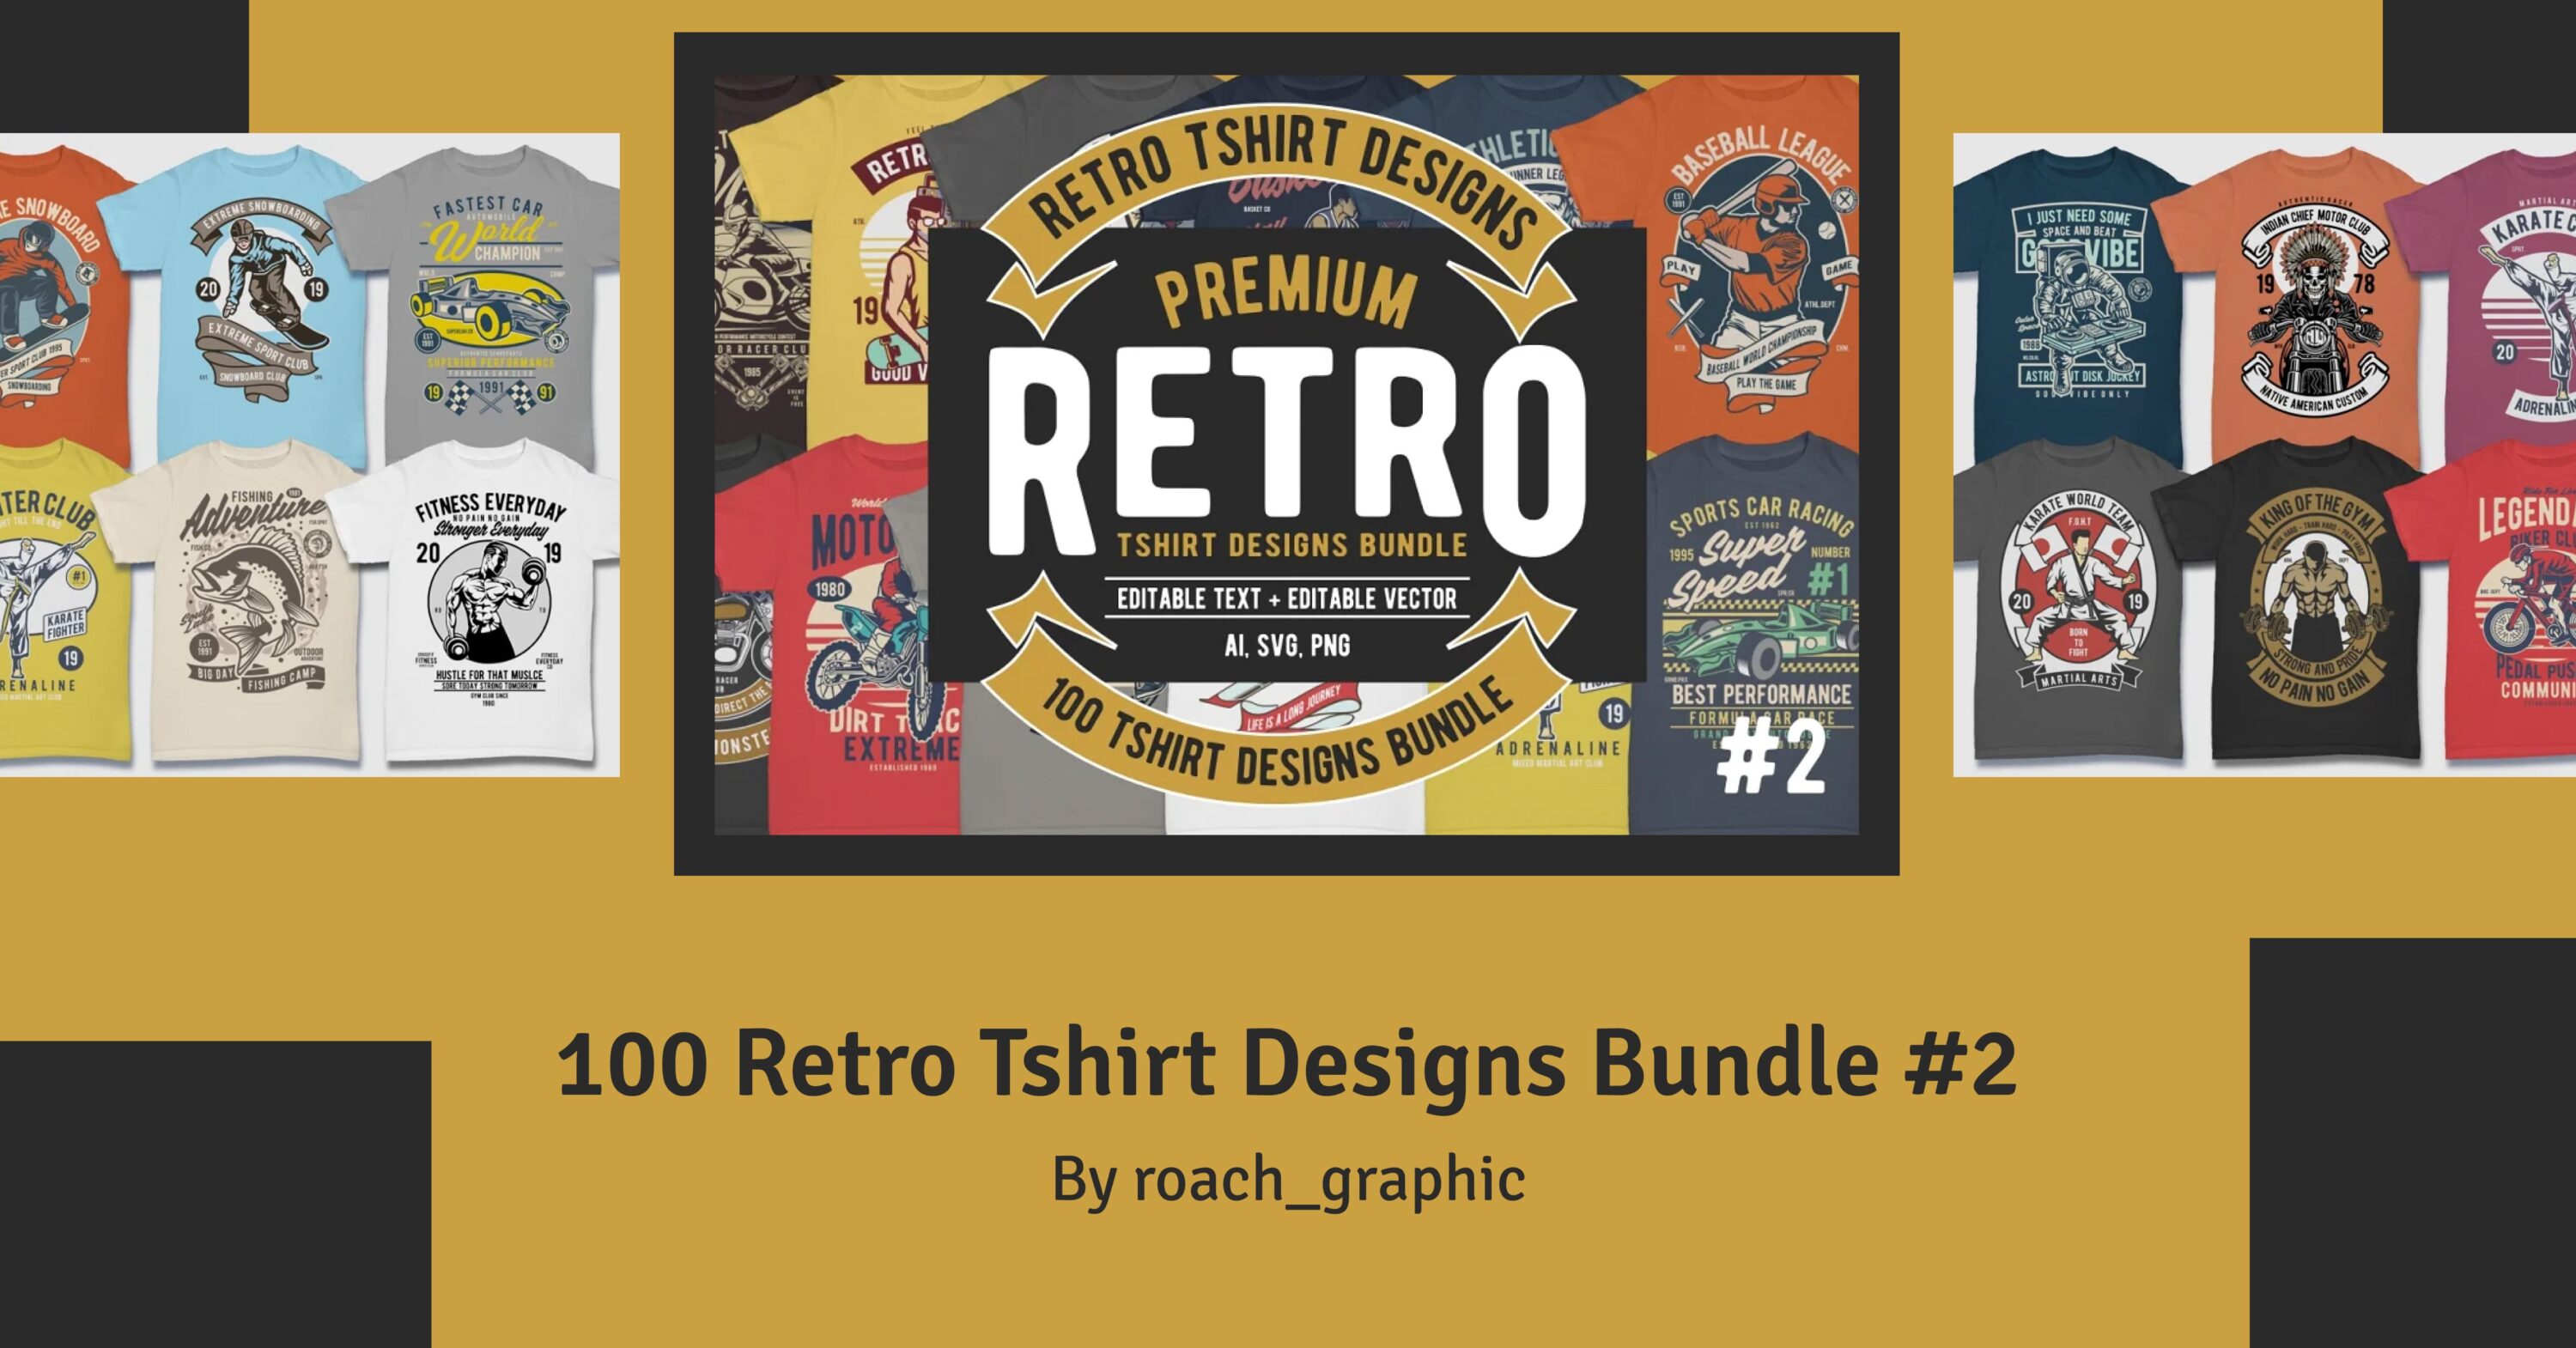 100 Retro Tshirt Designs Bundle #2 facebook image.